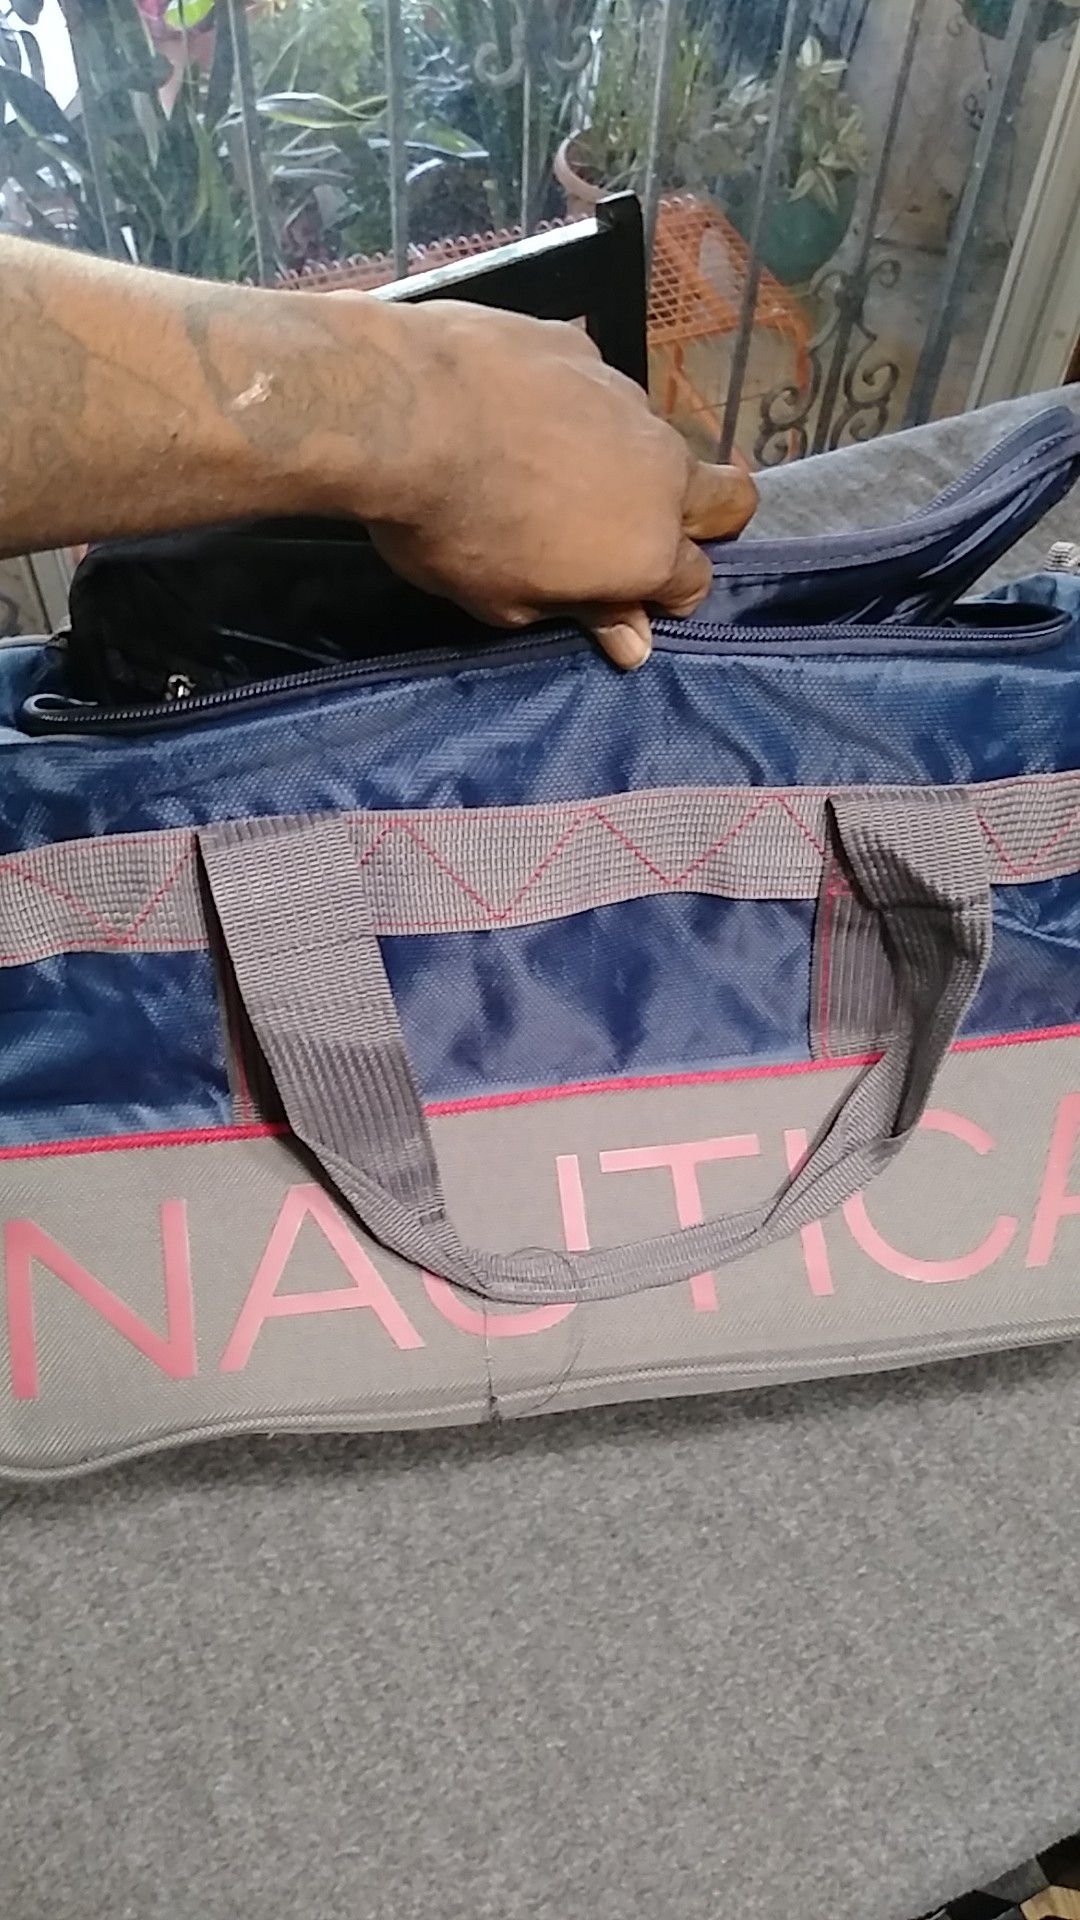 Nautica travel duffle bag